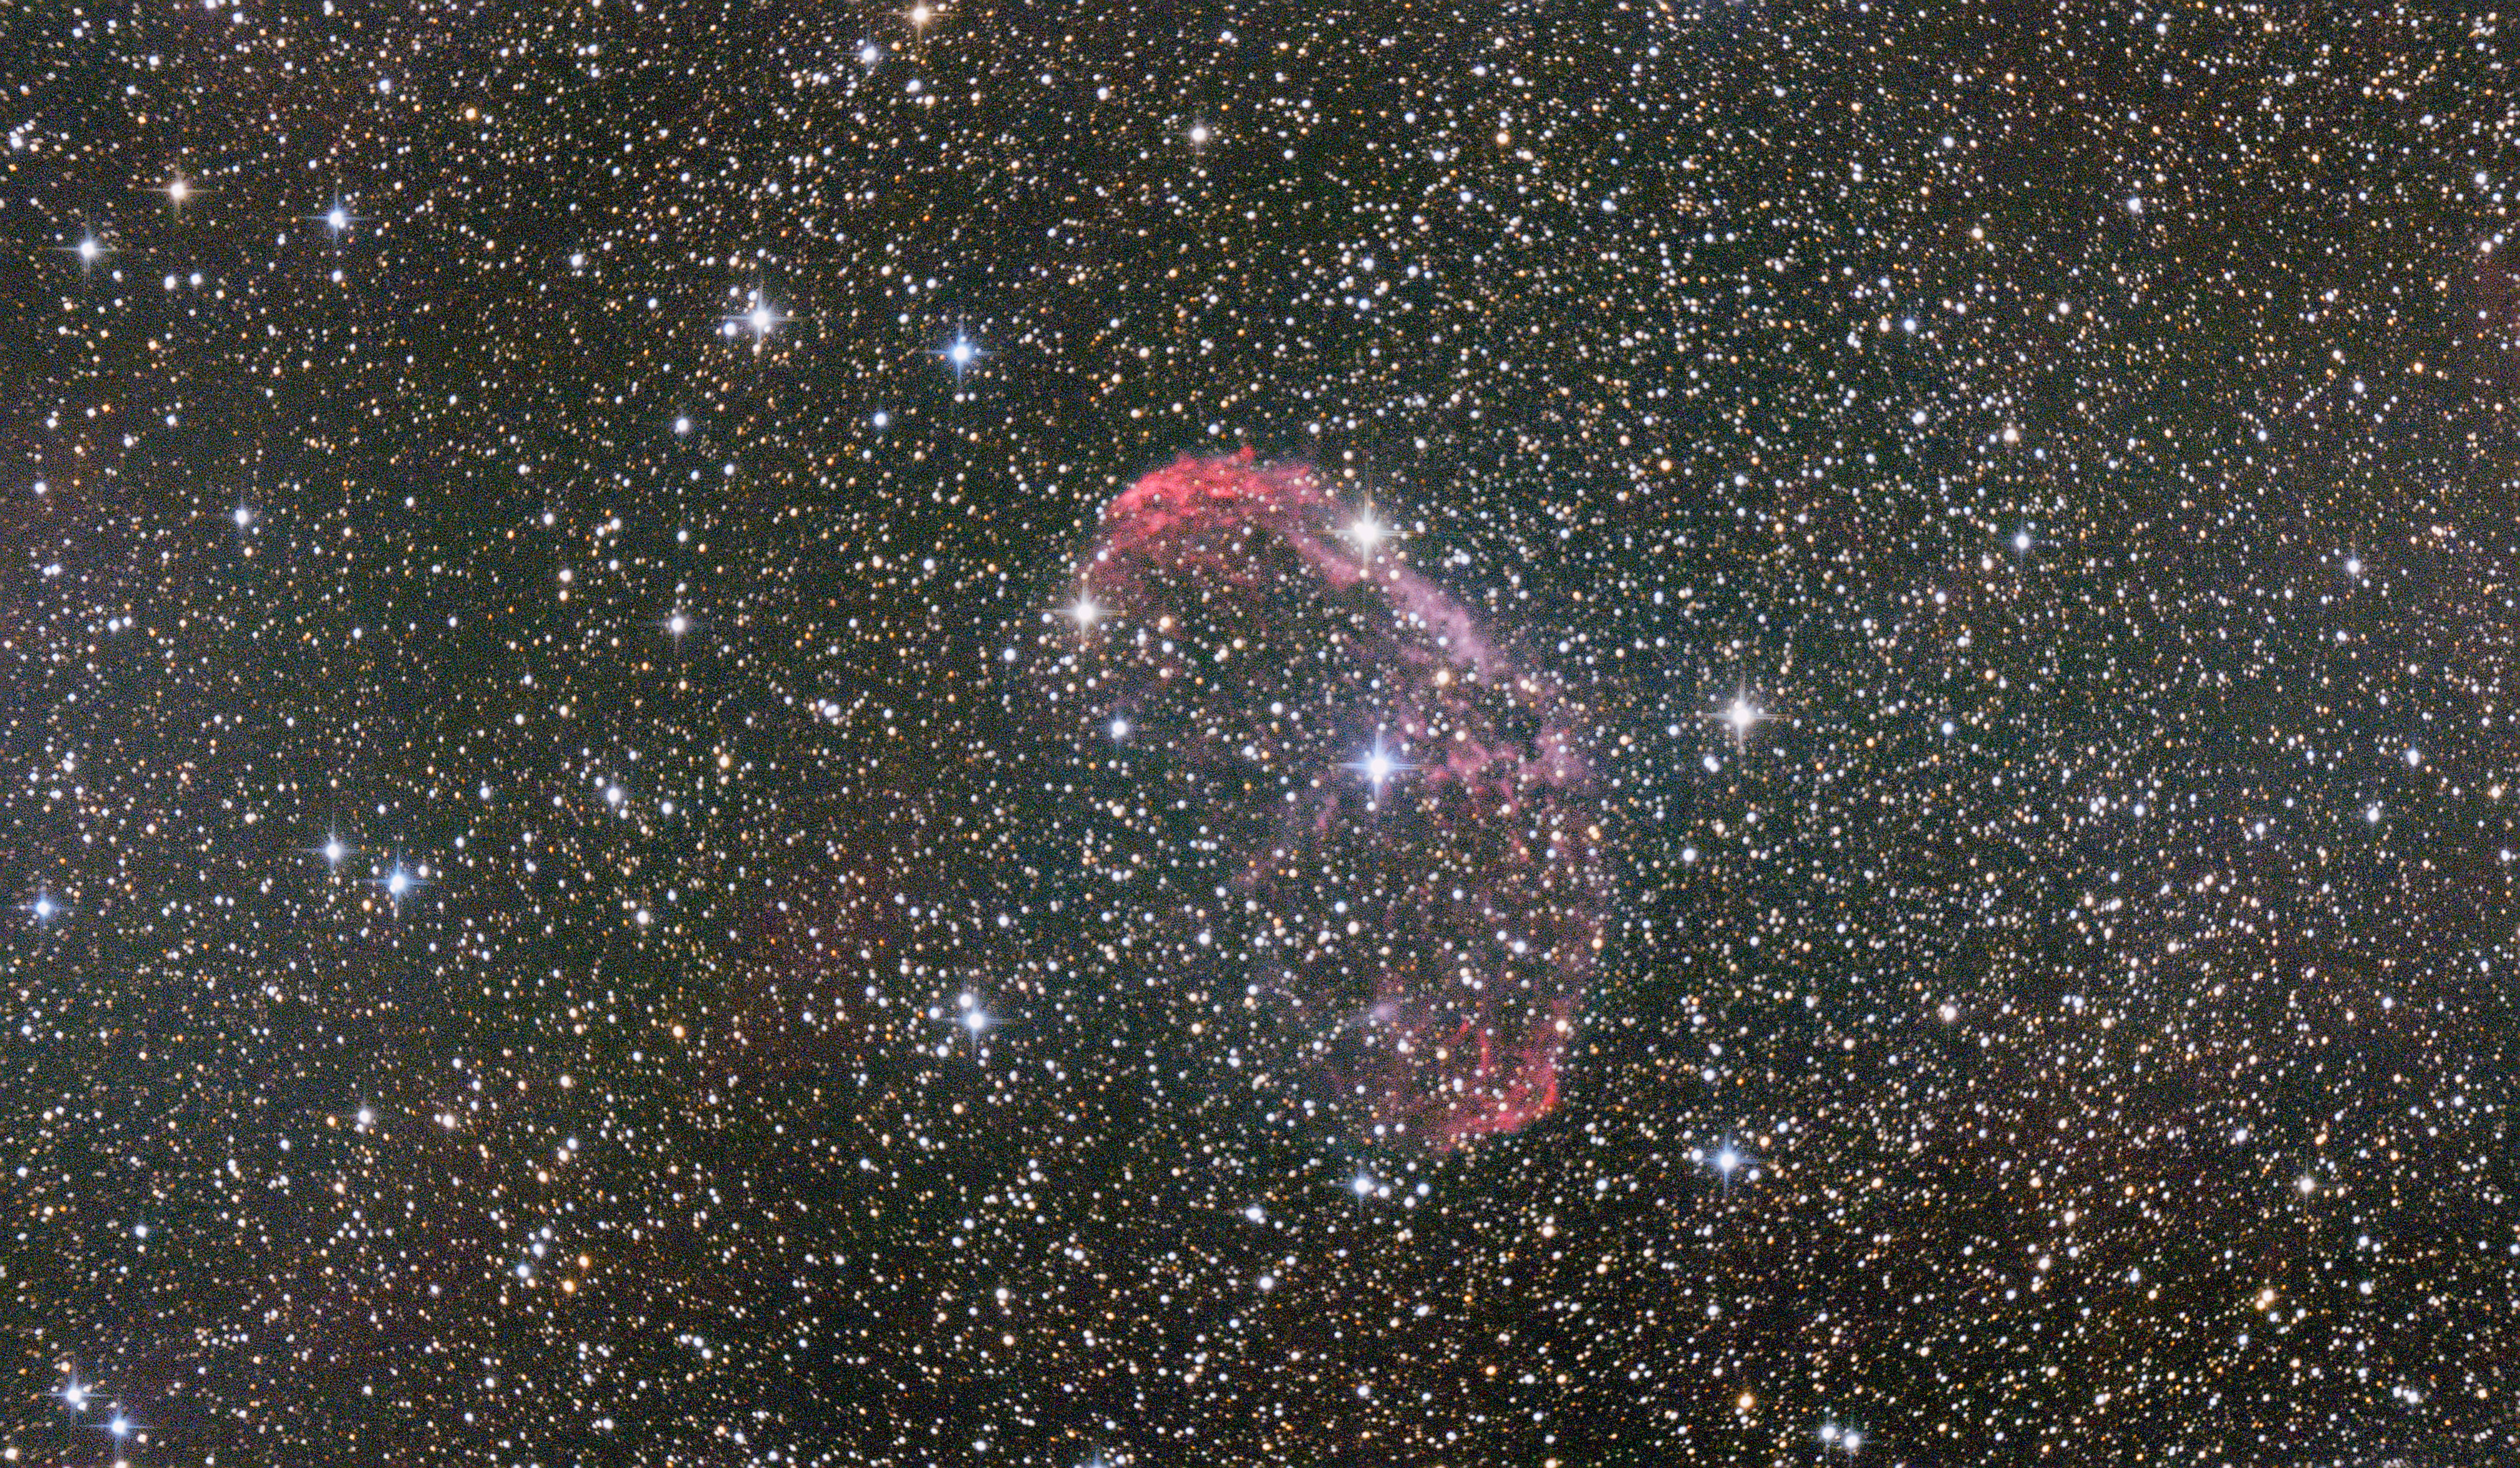 NGC6888.jpeg